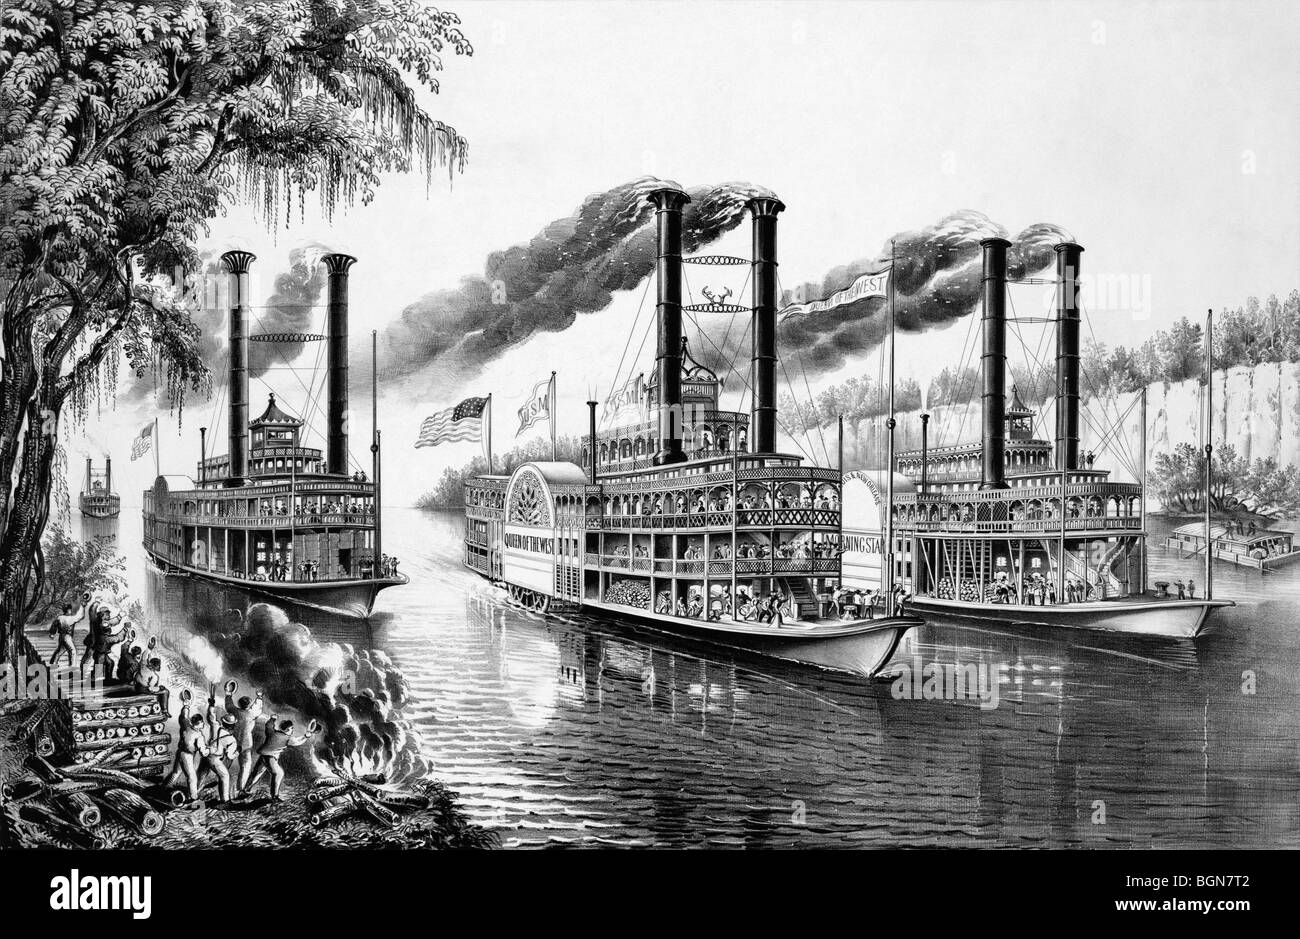 Titel "The Champions des Mississippi - ein Rennen für die Buckhorns" Drucken und Darstellung Dampfschiffe racing entlang des Flusses. Stockfoto